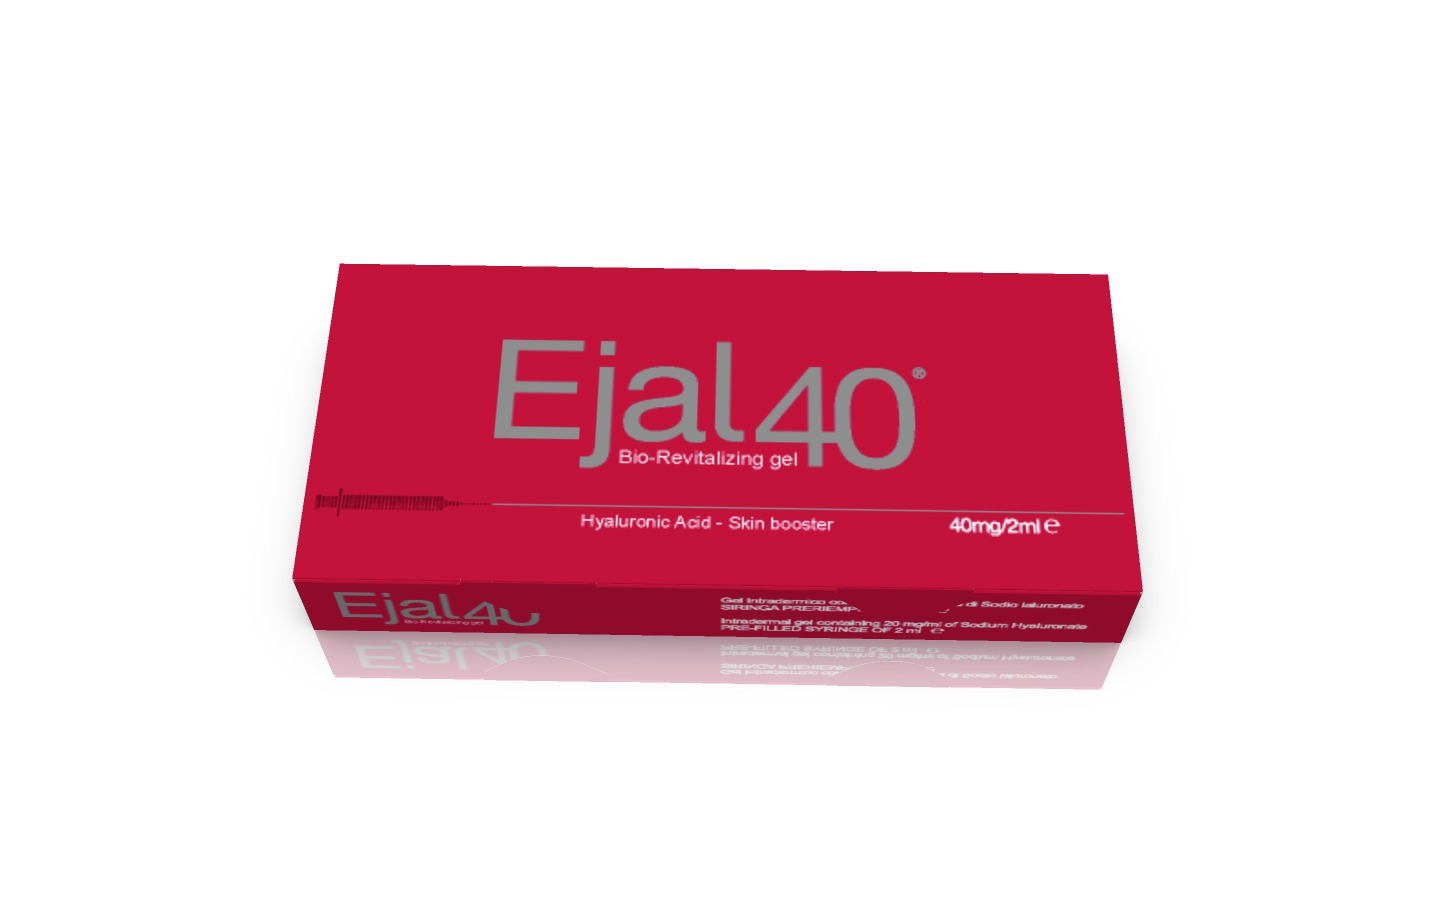 ejal40 acid hialuronic, 2ml